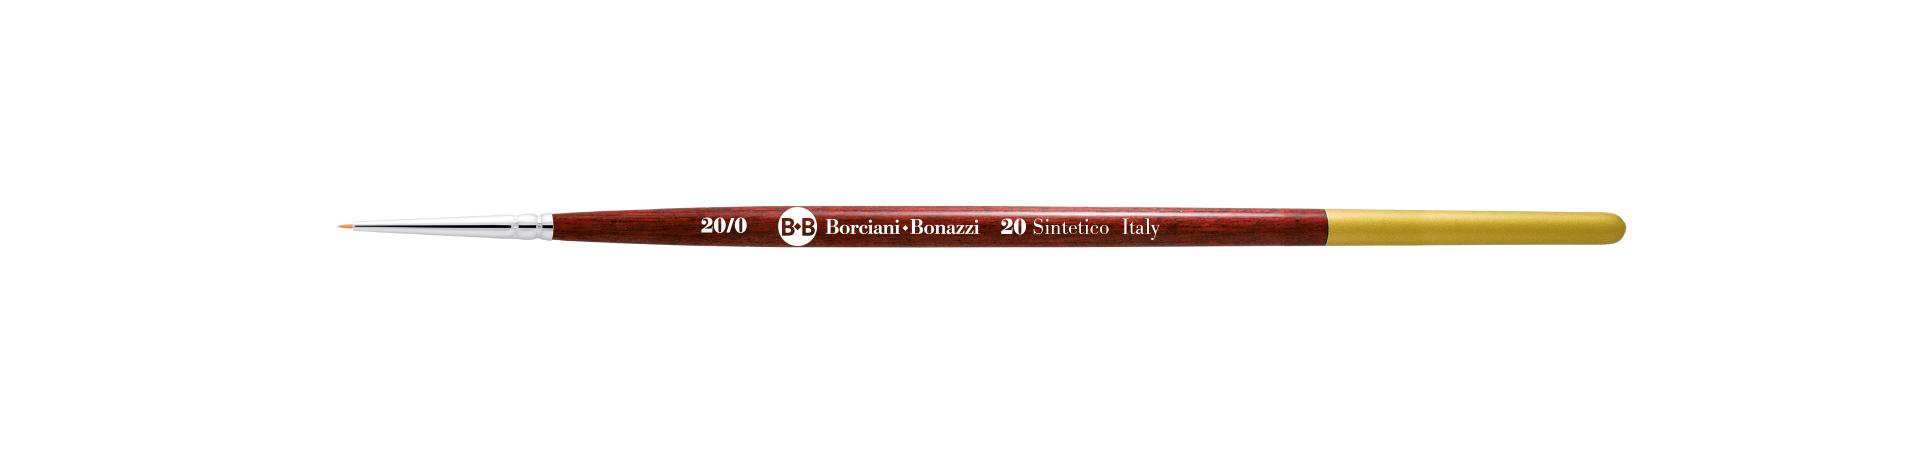 Brush Calligraphy o Calligrafia: pennelli per grandi campiture serie 20 - Borciani e Bonazzi